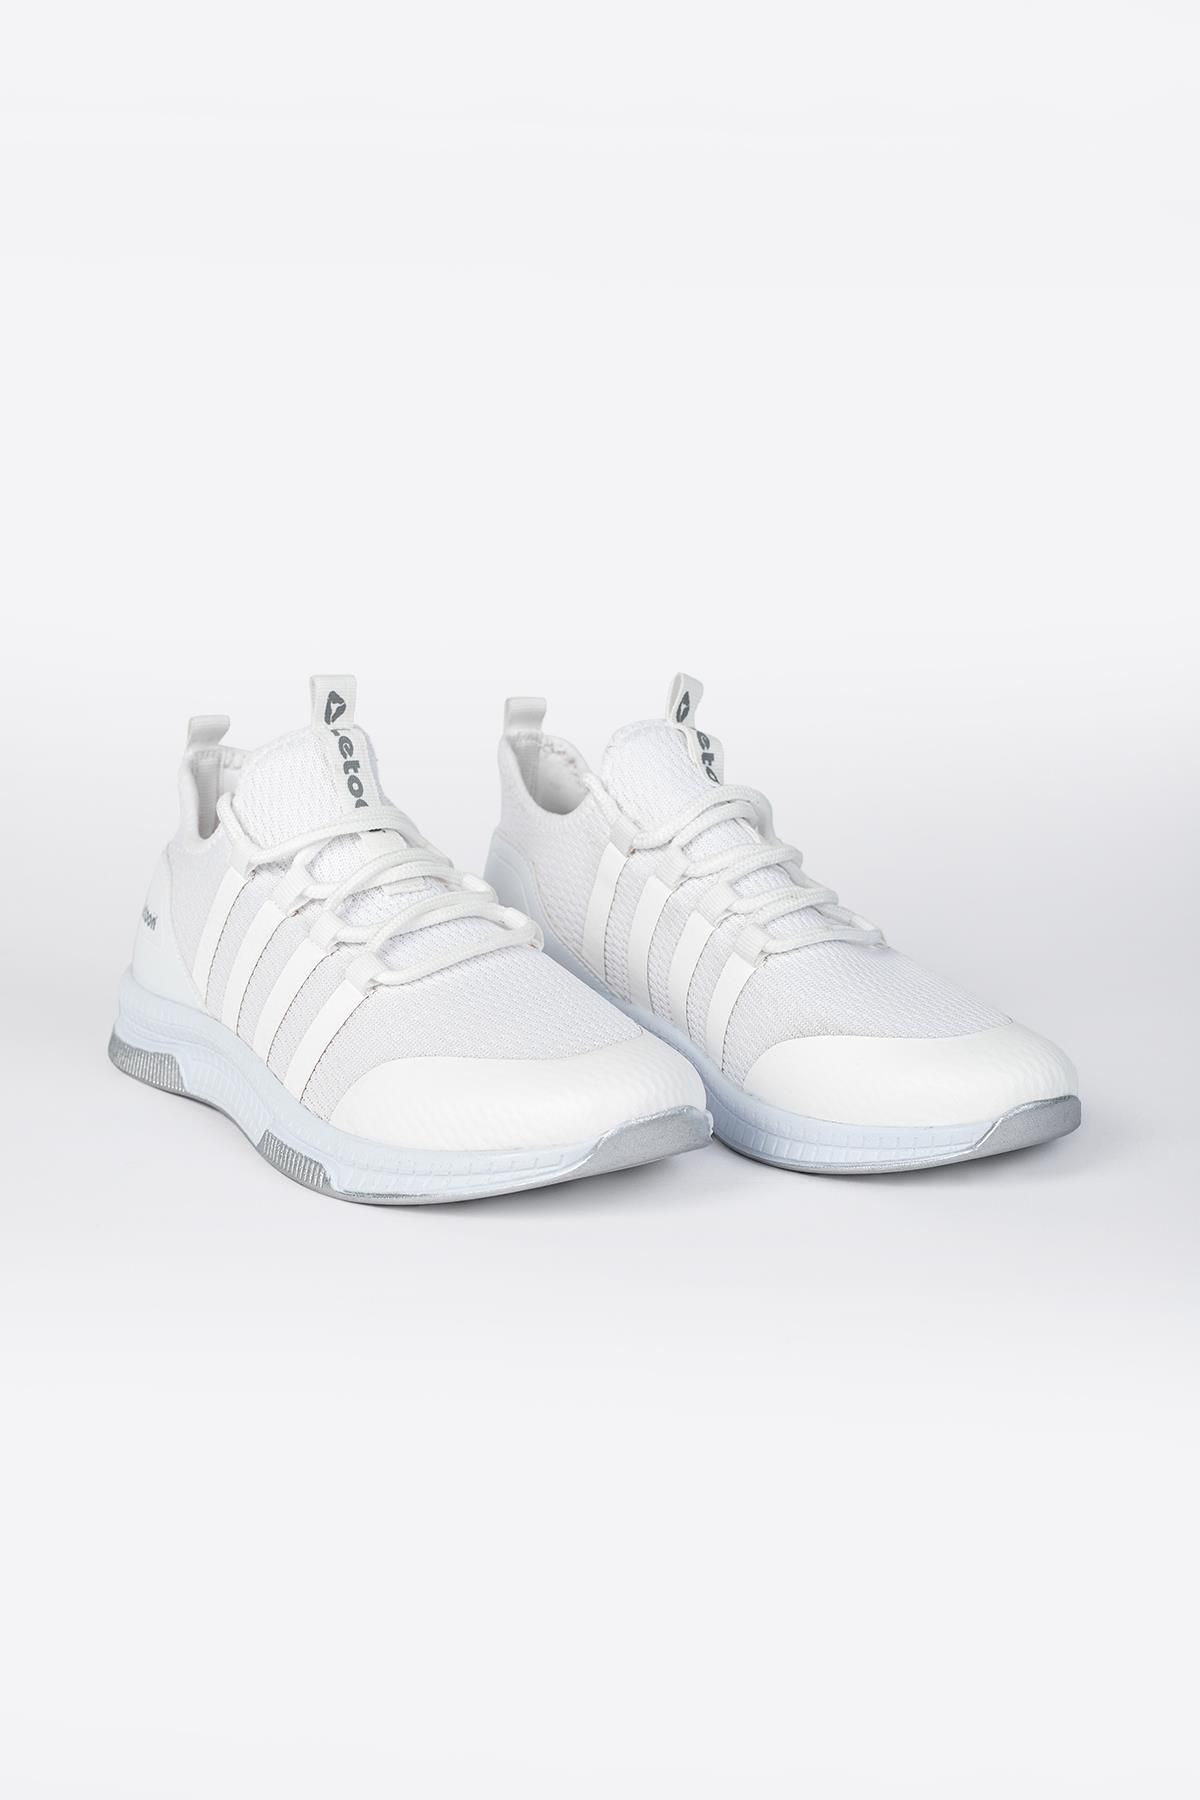 LETOON 2104 - Unısex Beyaz Gri Spor Ayakkabı